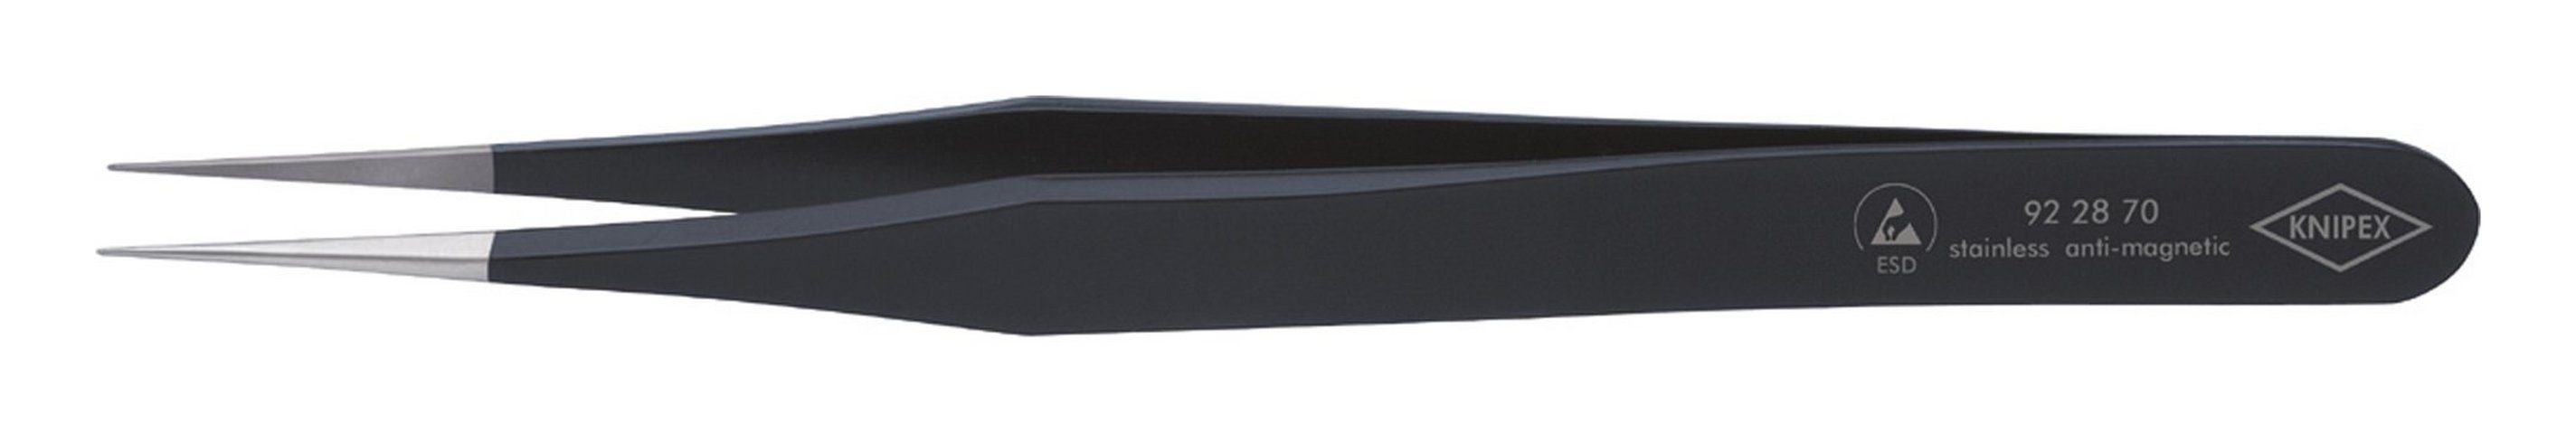 Knipex Pinzette, ESD 110 mm schwarz